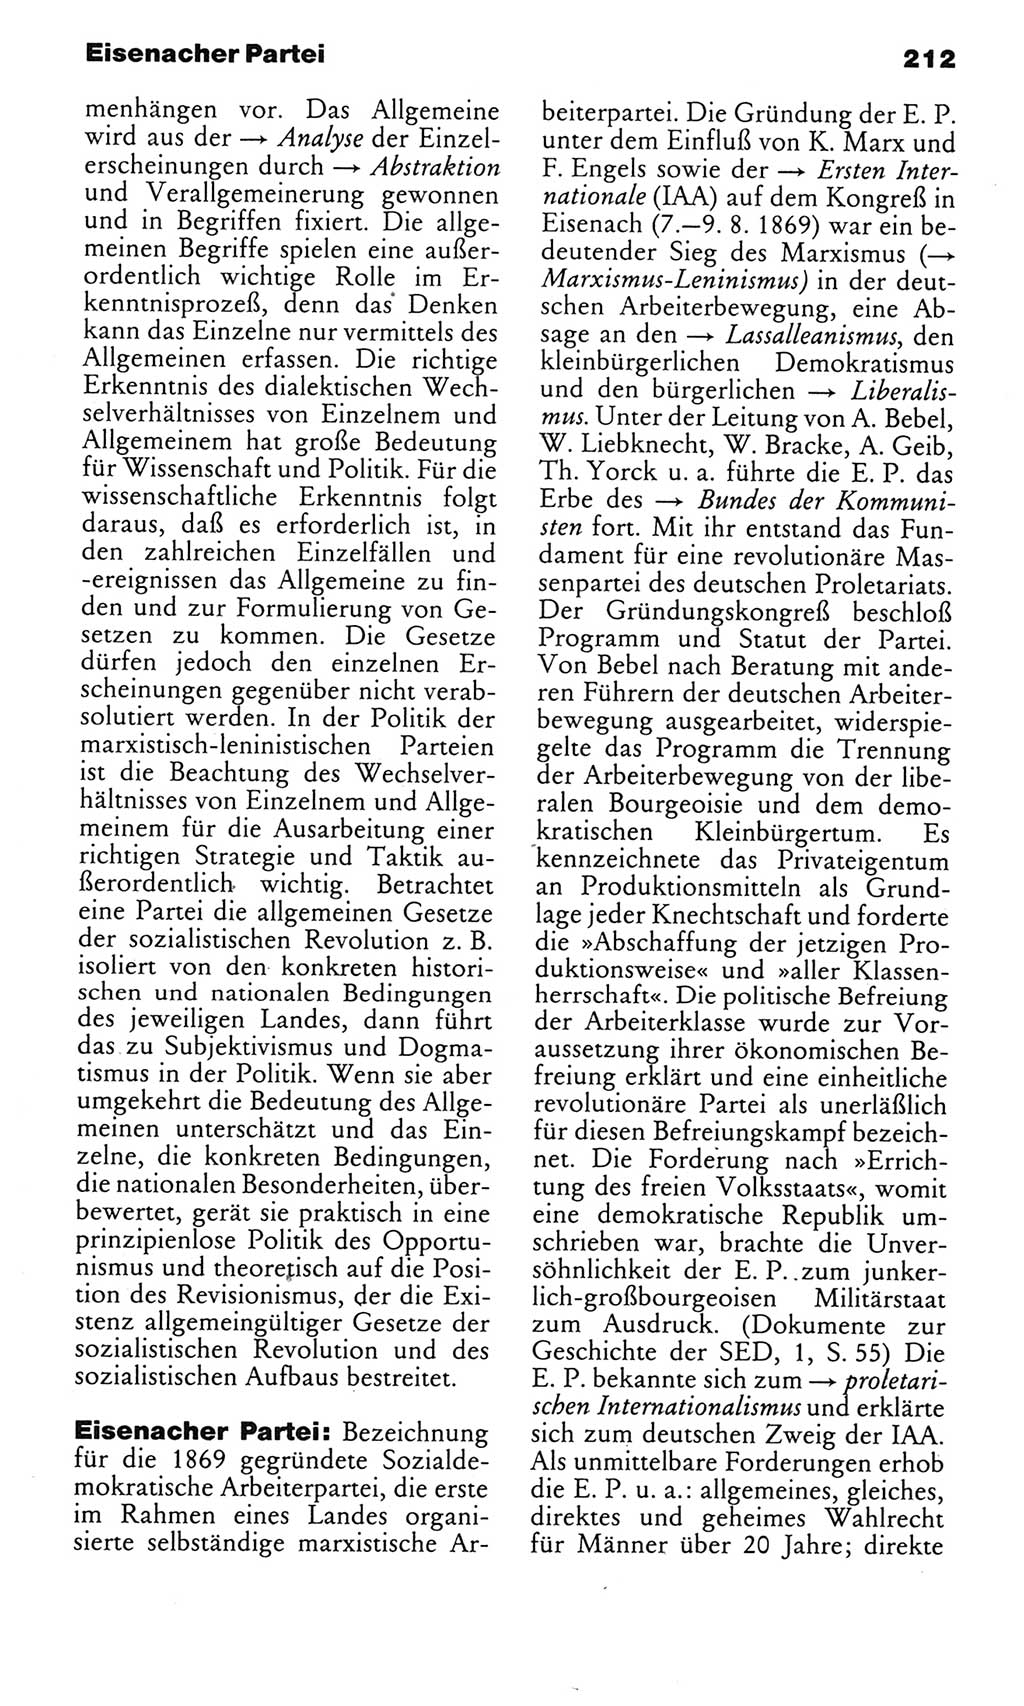 Kleines politisches Wörterbuch [Deutsche Demokratische Republik (DDR)] 1985, Seite 212 (Kl. pol. Wb. DDR 1985, S. 212)